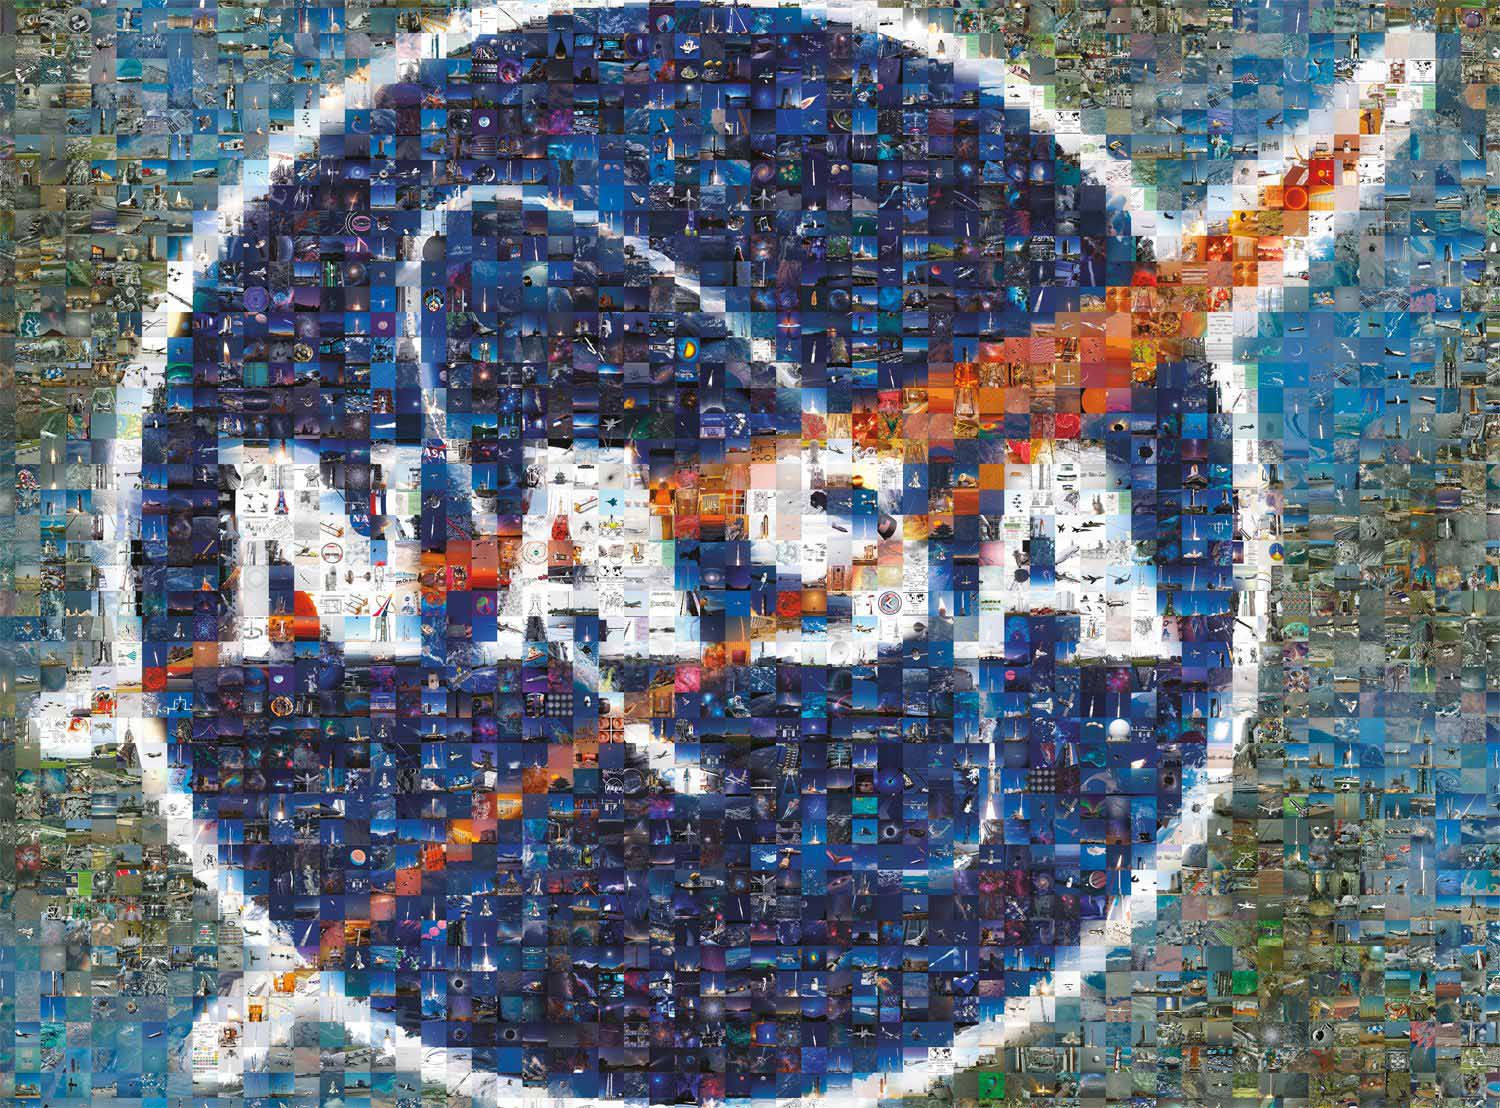 NASA Photomosaic Space Jigsaw Puzzle